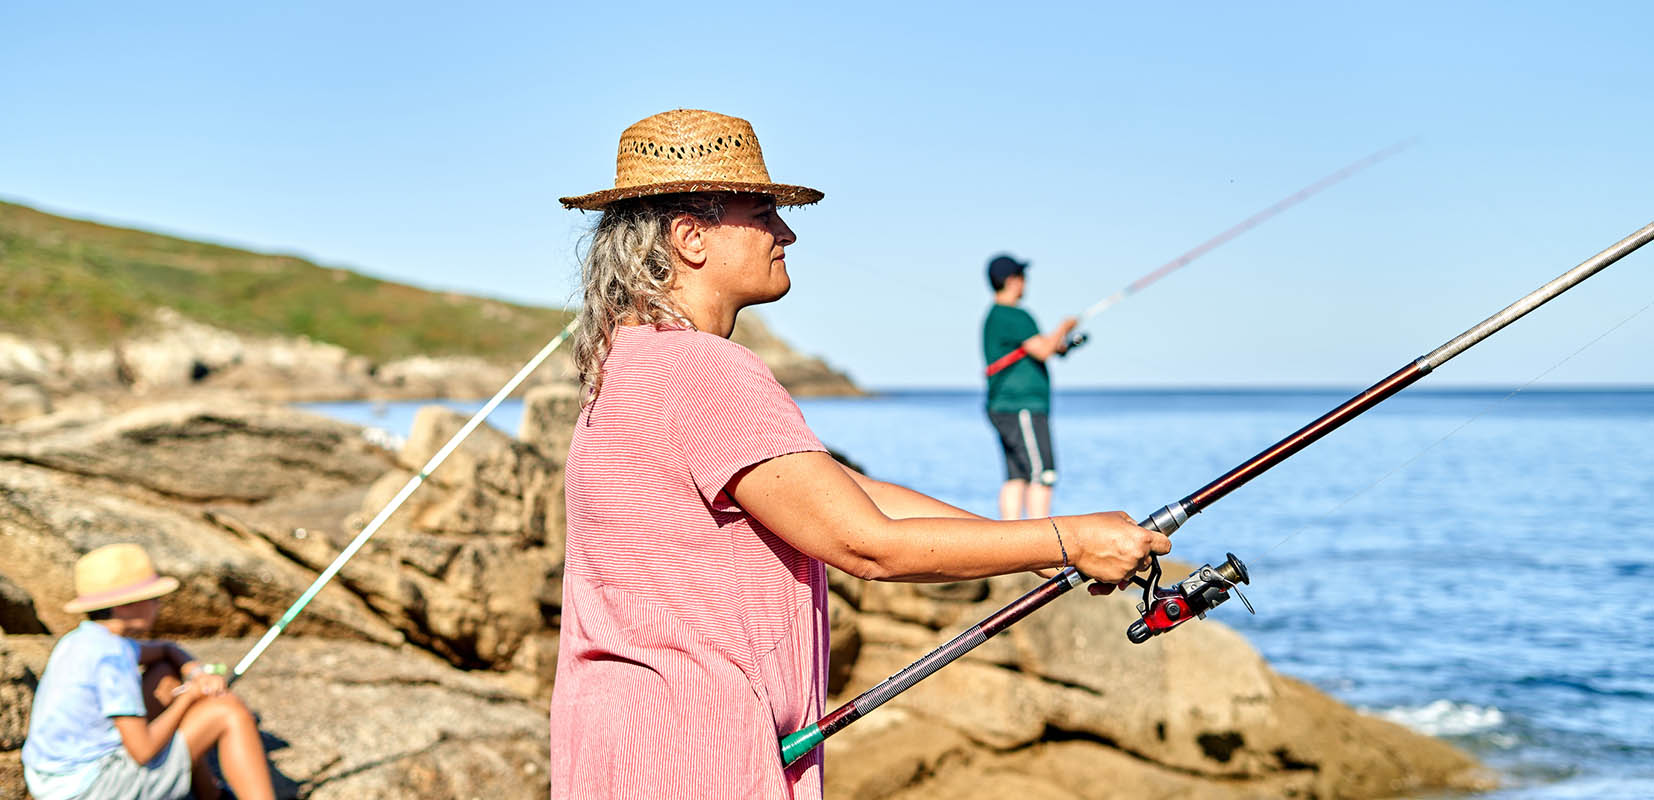 Las mujeres pescadoras representan un alto porcentaje de la actividad del sector